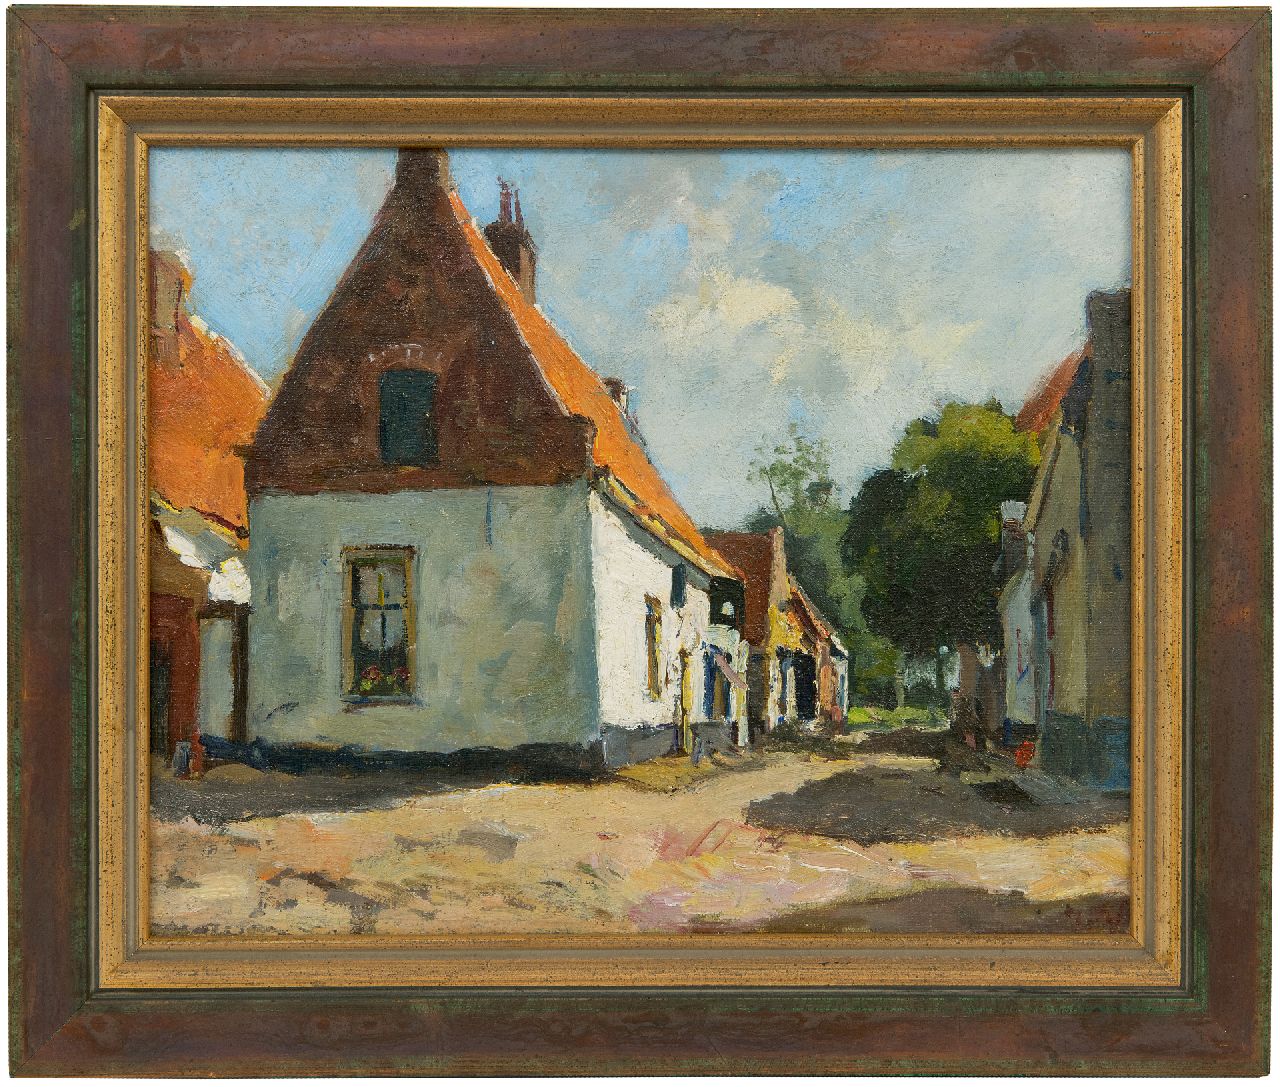 Vuuren J. van | Jan van Vuuren | Schilderijen te koop aangeboden | Zonnig straatje in Elburg, olieverf op doek 24,1 x 30,1 cm, gesigneerd rechtsonder